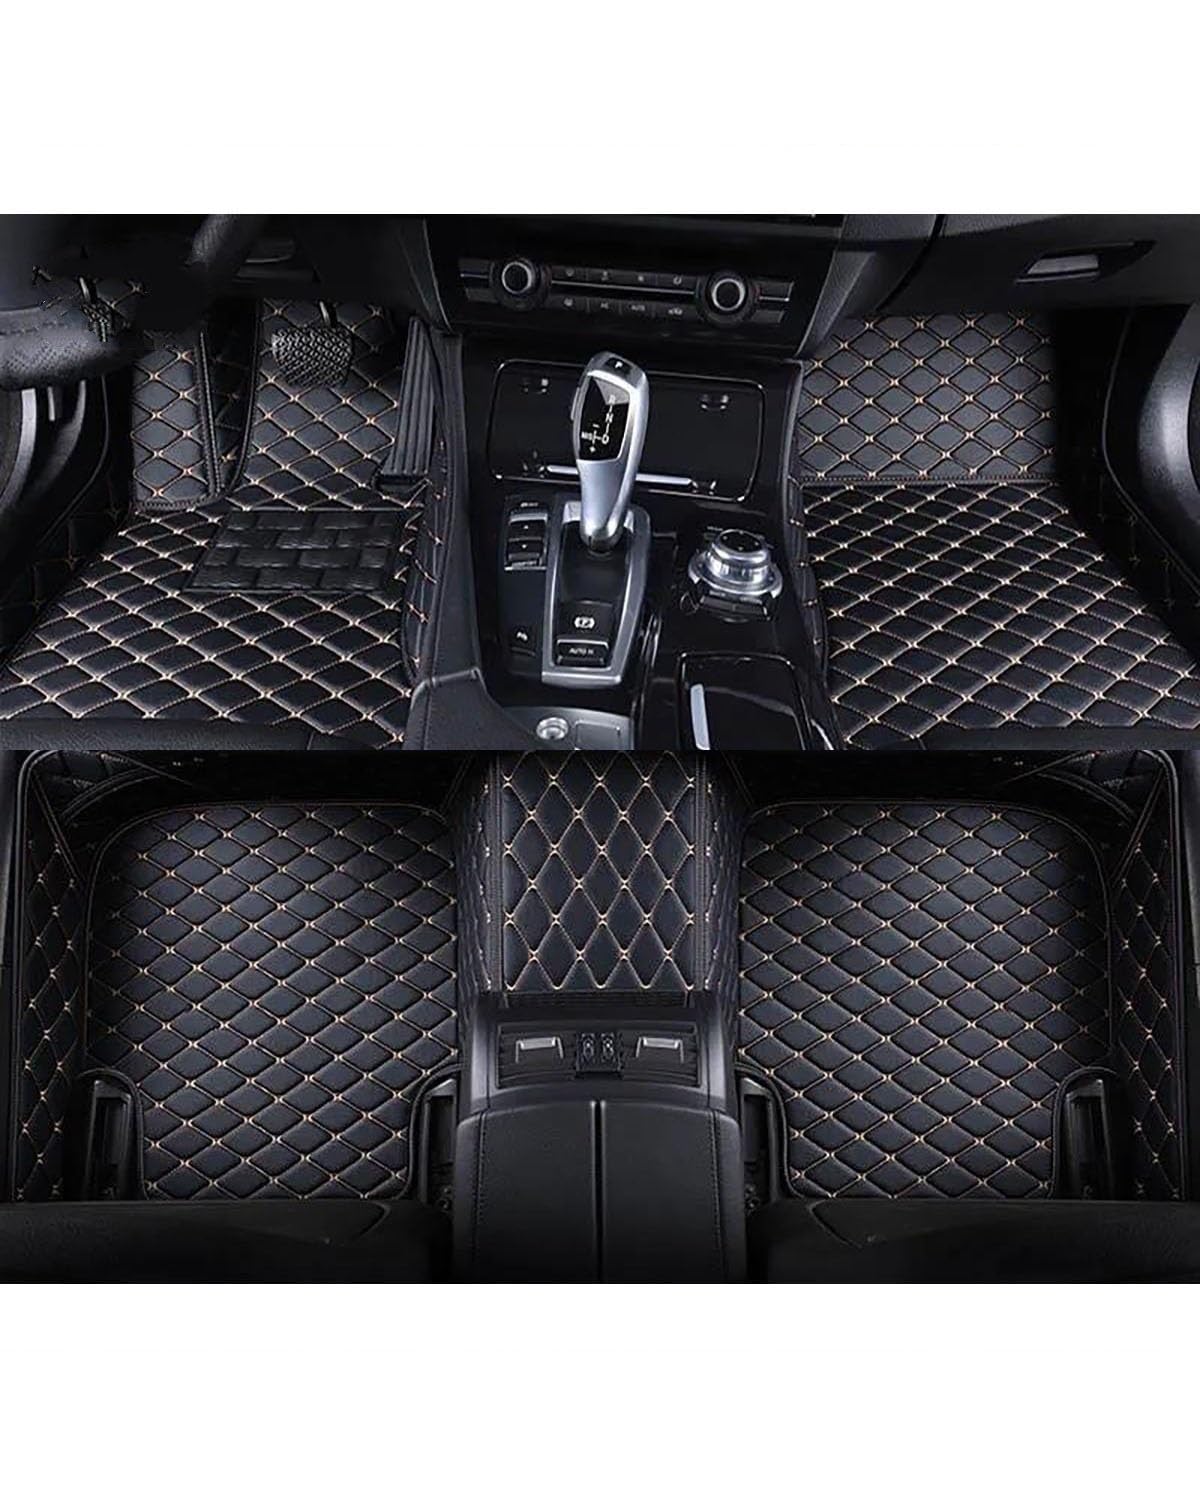 Auto Fußmatten 1Set Auto-Fußmatten Für 6 Für Gran Für Turismo Für G32 Für 6GT Auto-Fußraummatten Auto-Zubehör Auto-Innenraum Autofußmatten(Black Beige) von XJJJWL